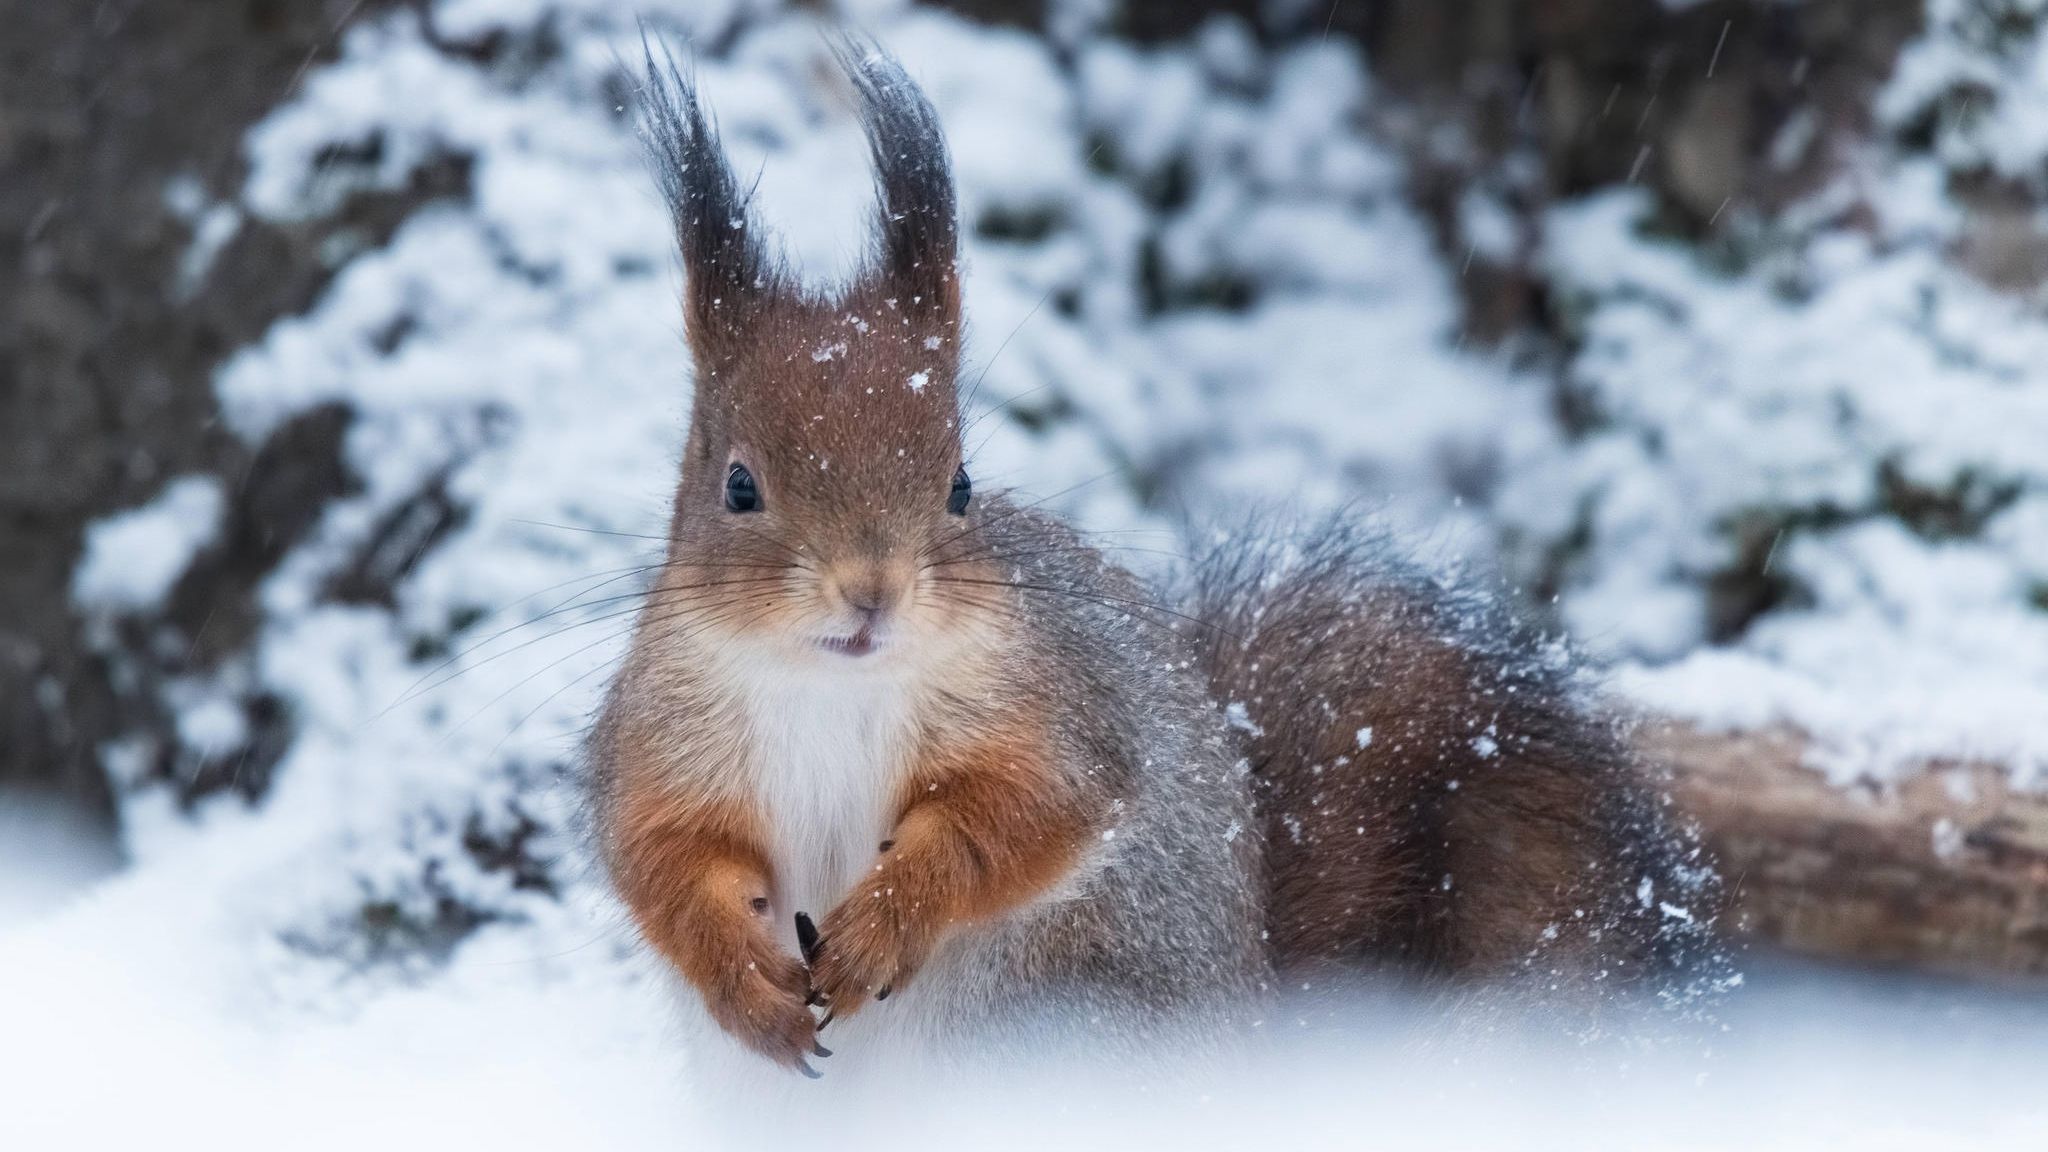 Winter-Wetter: Auch Tiere sind geteilter Meinung über Schnee